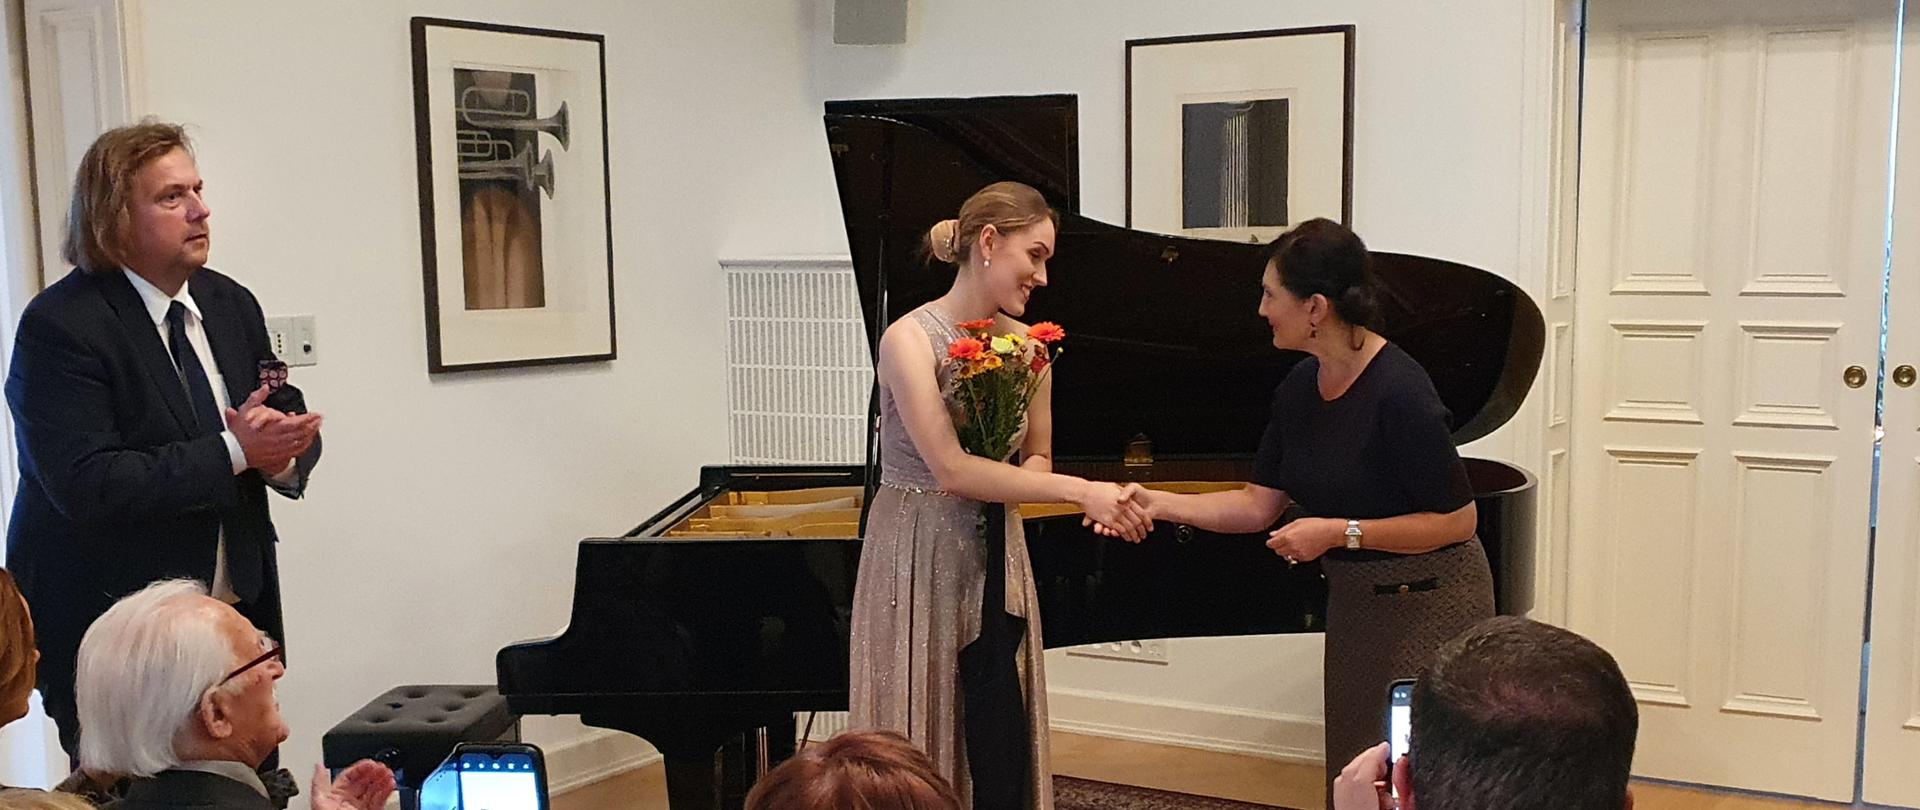 Wieczór z muzyką Karola Szymanowskiego i Fryderyka Chopina w Rezydencji Ambasadora, współorganizowany przez Ambasadę RP w Sztokholmie i Instytut Polski w Sztokholmie